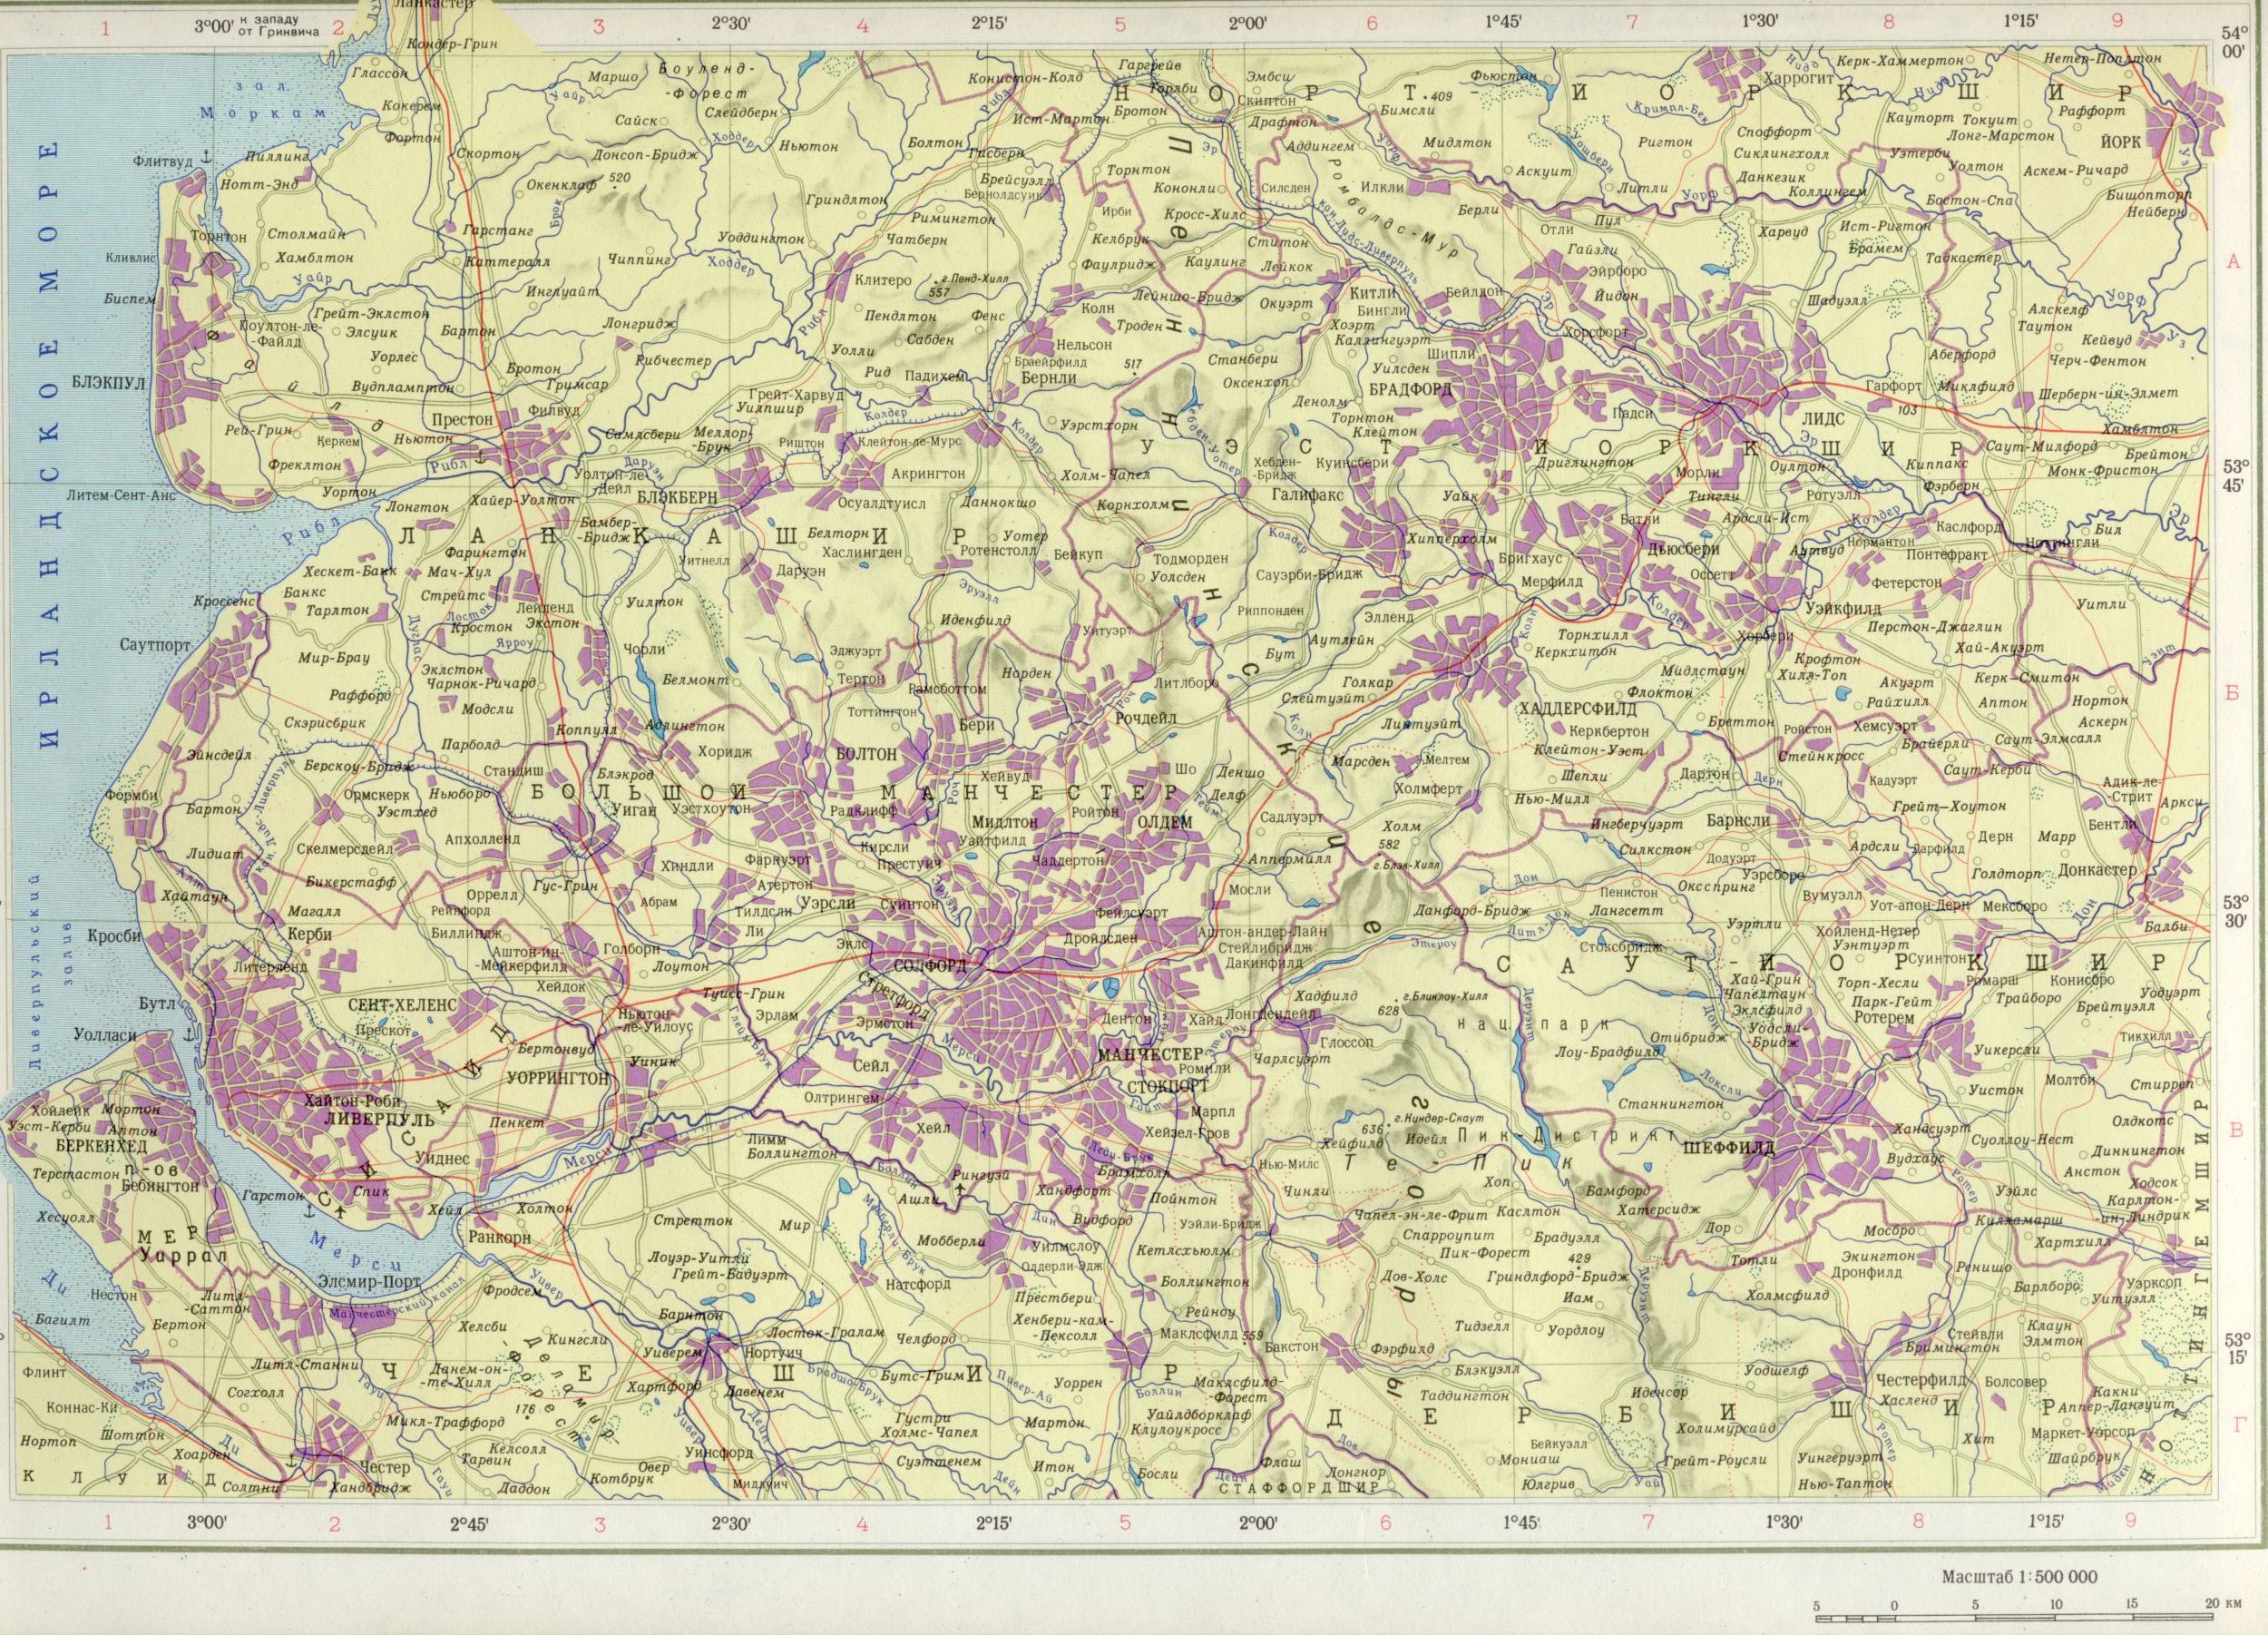 Karte von England Bezirk Manchester 1cm = 5km. Download der kostenlosen politische Landkarte Europas